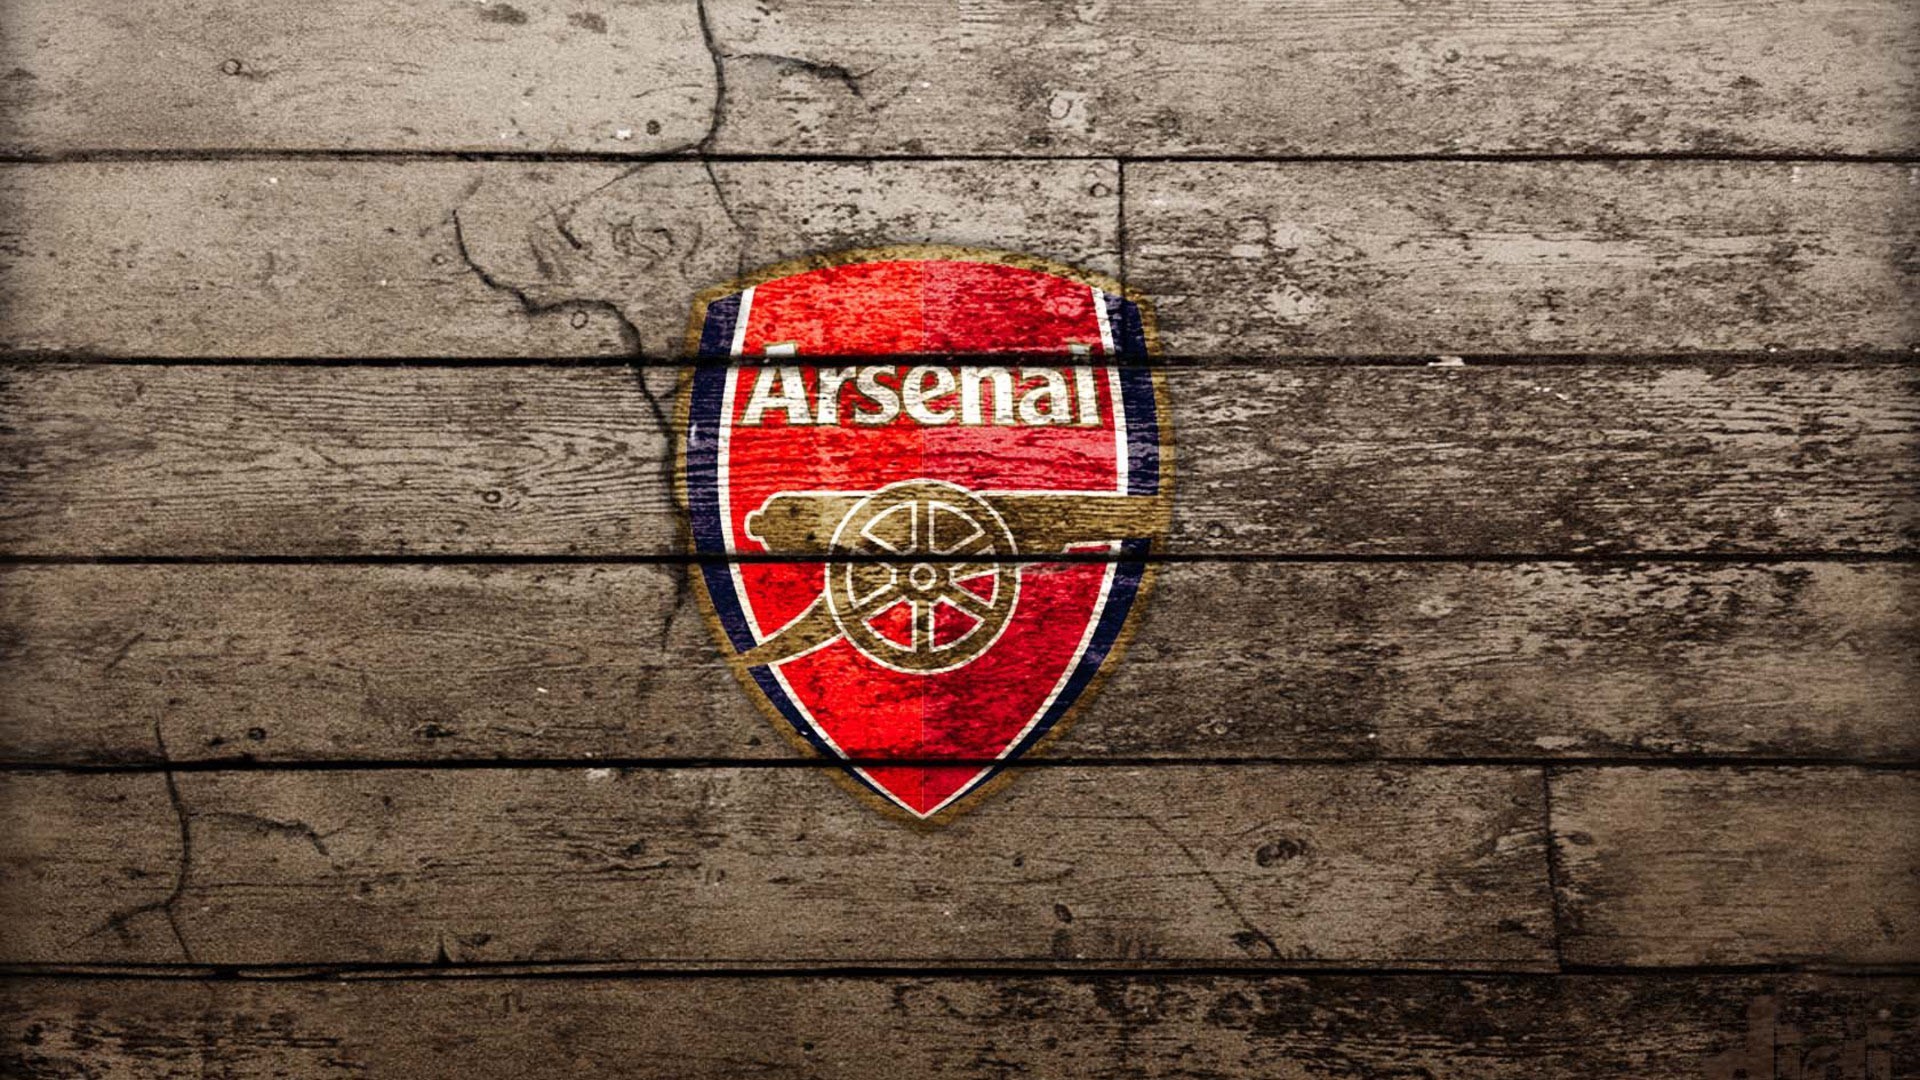 Arsenal London Wallpaper